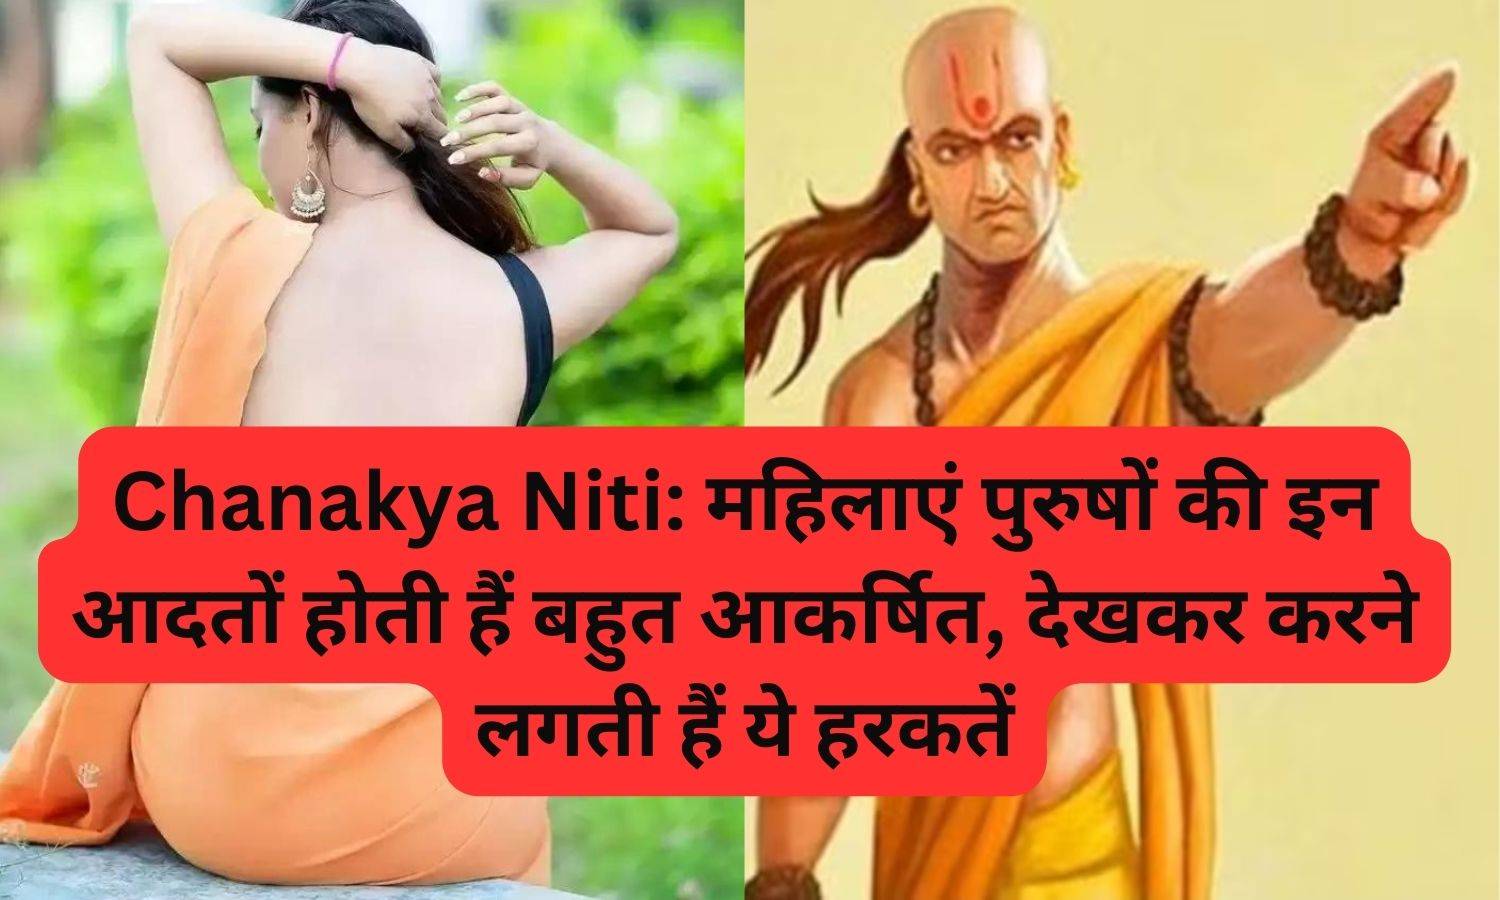 Chanakya Niti: महिलाएं पुरुषों की इन आदतों होती हैं बहुत आकर्षित, देखकर करने लगती हैं ये हरकतें